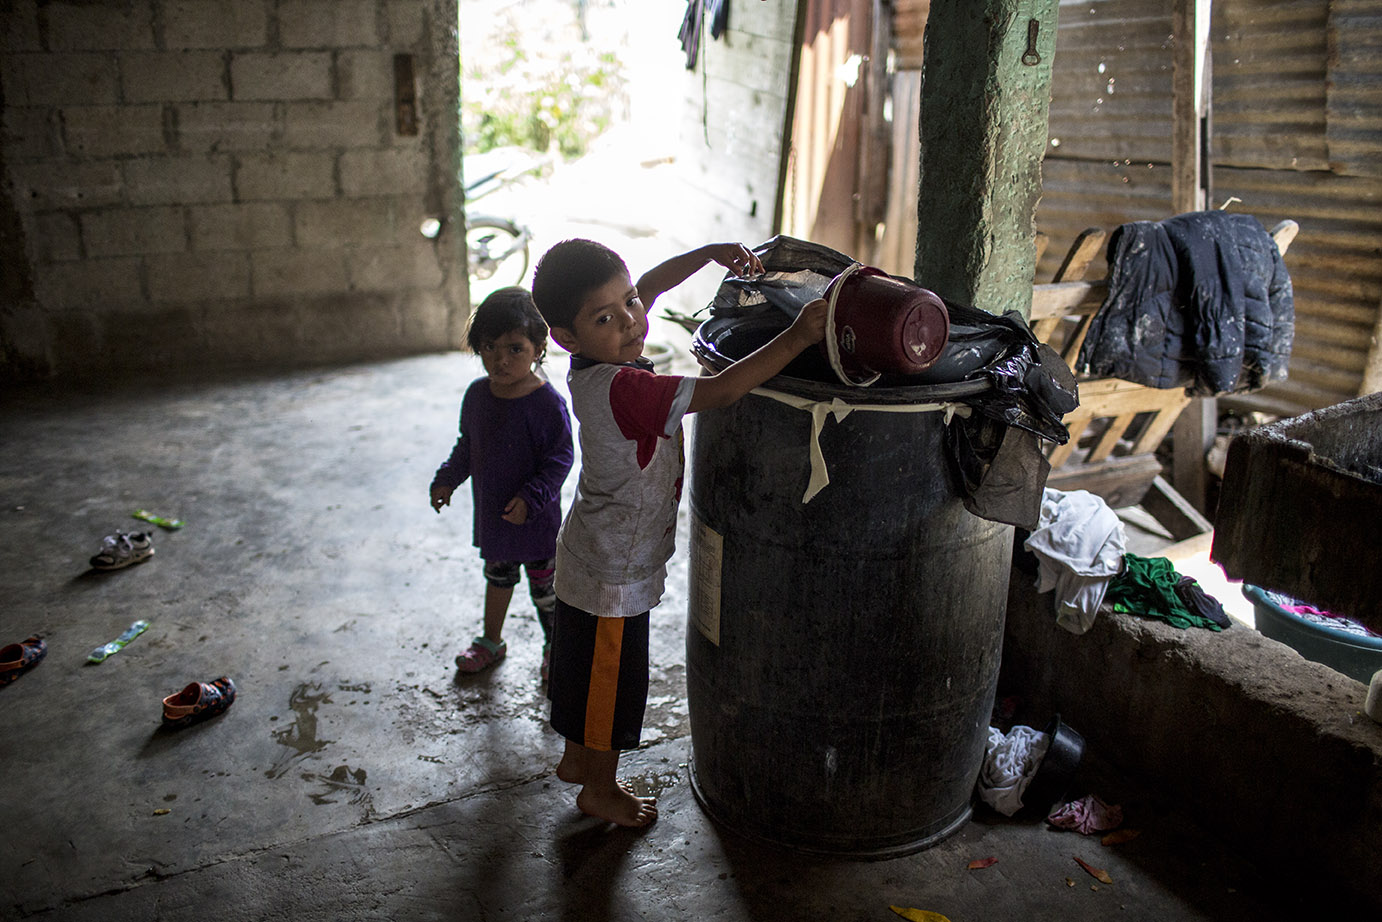 Oscar Daniel, 5, ayuda a llenar el tanque de agua en casa de la abuela, Norma Idalia Ciam de Guamuch, en la aldea Lo de Rodríguez, sector 2 Vuelta Grande, zona 18 capitalina, en mayo 2020. Simone Dalmasso